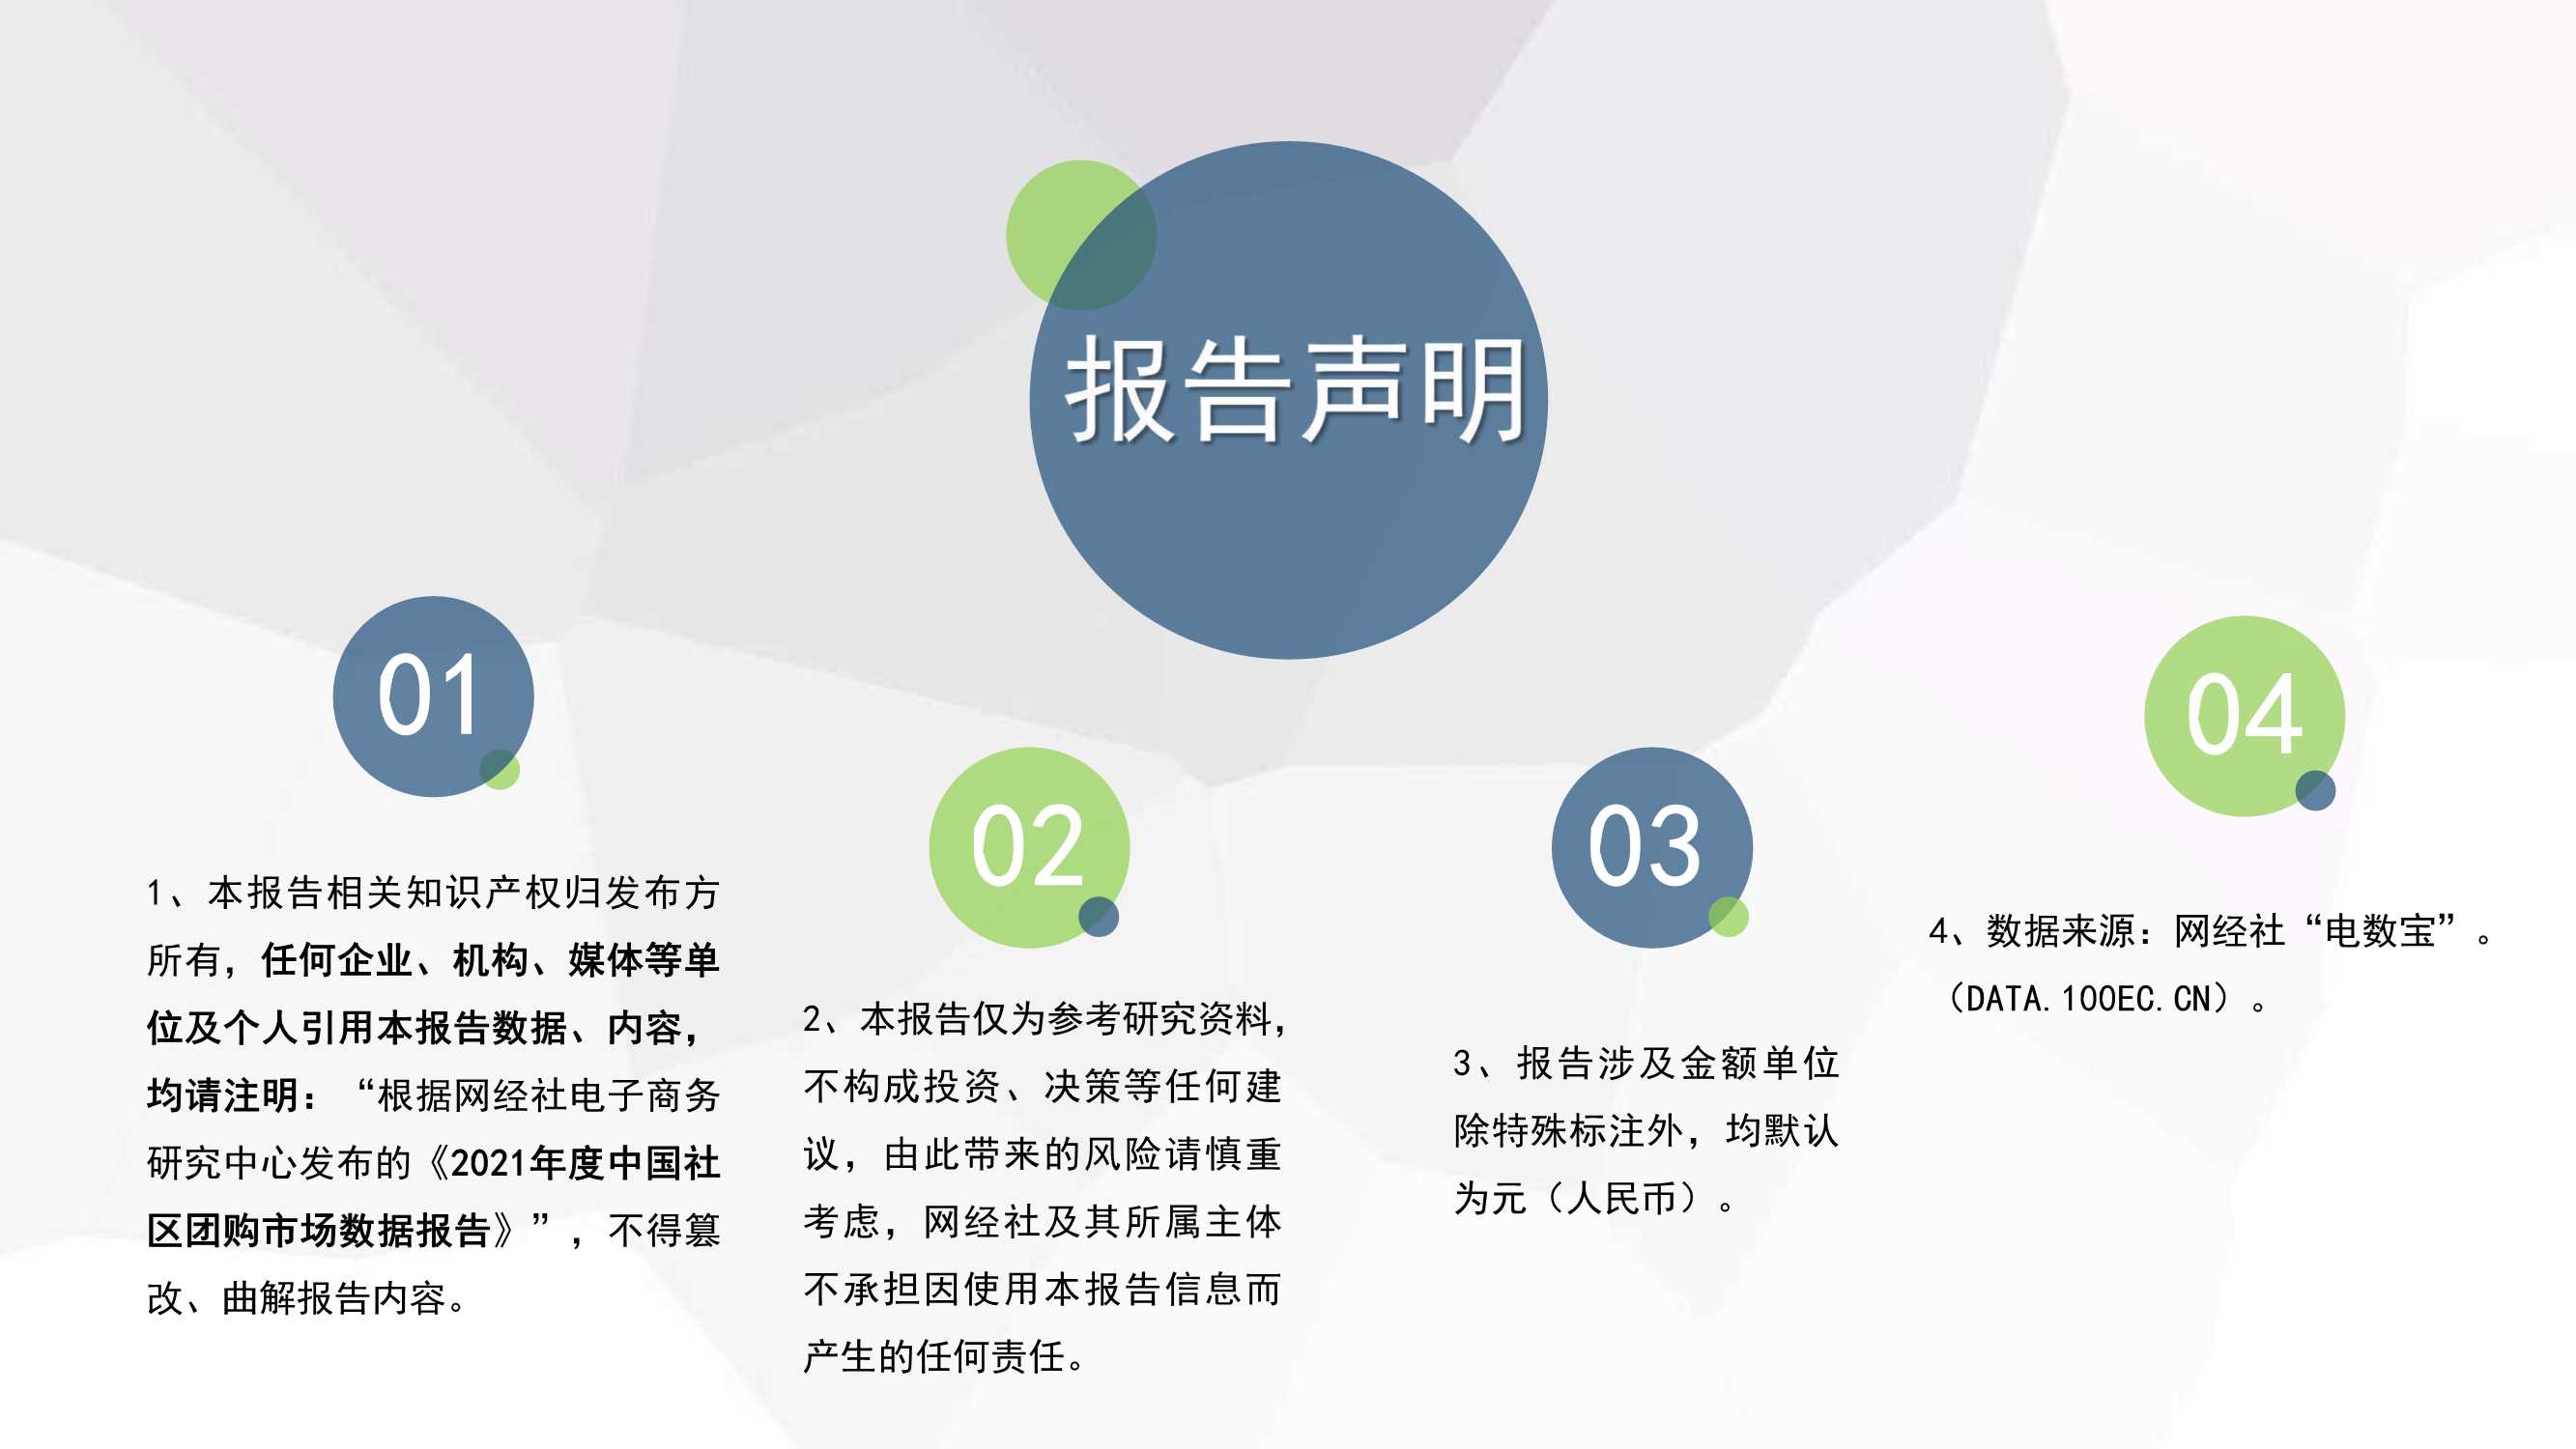 2021年度中国社区团购市场数据报告-2022.03-33页